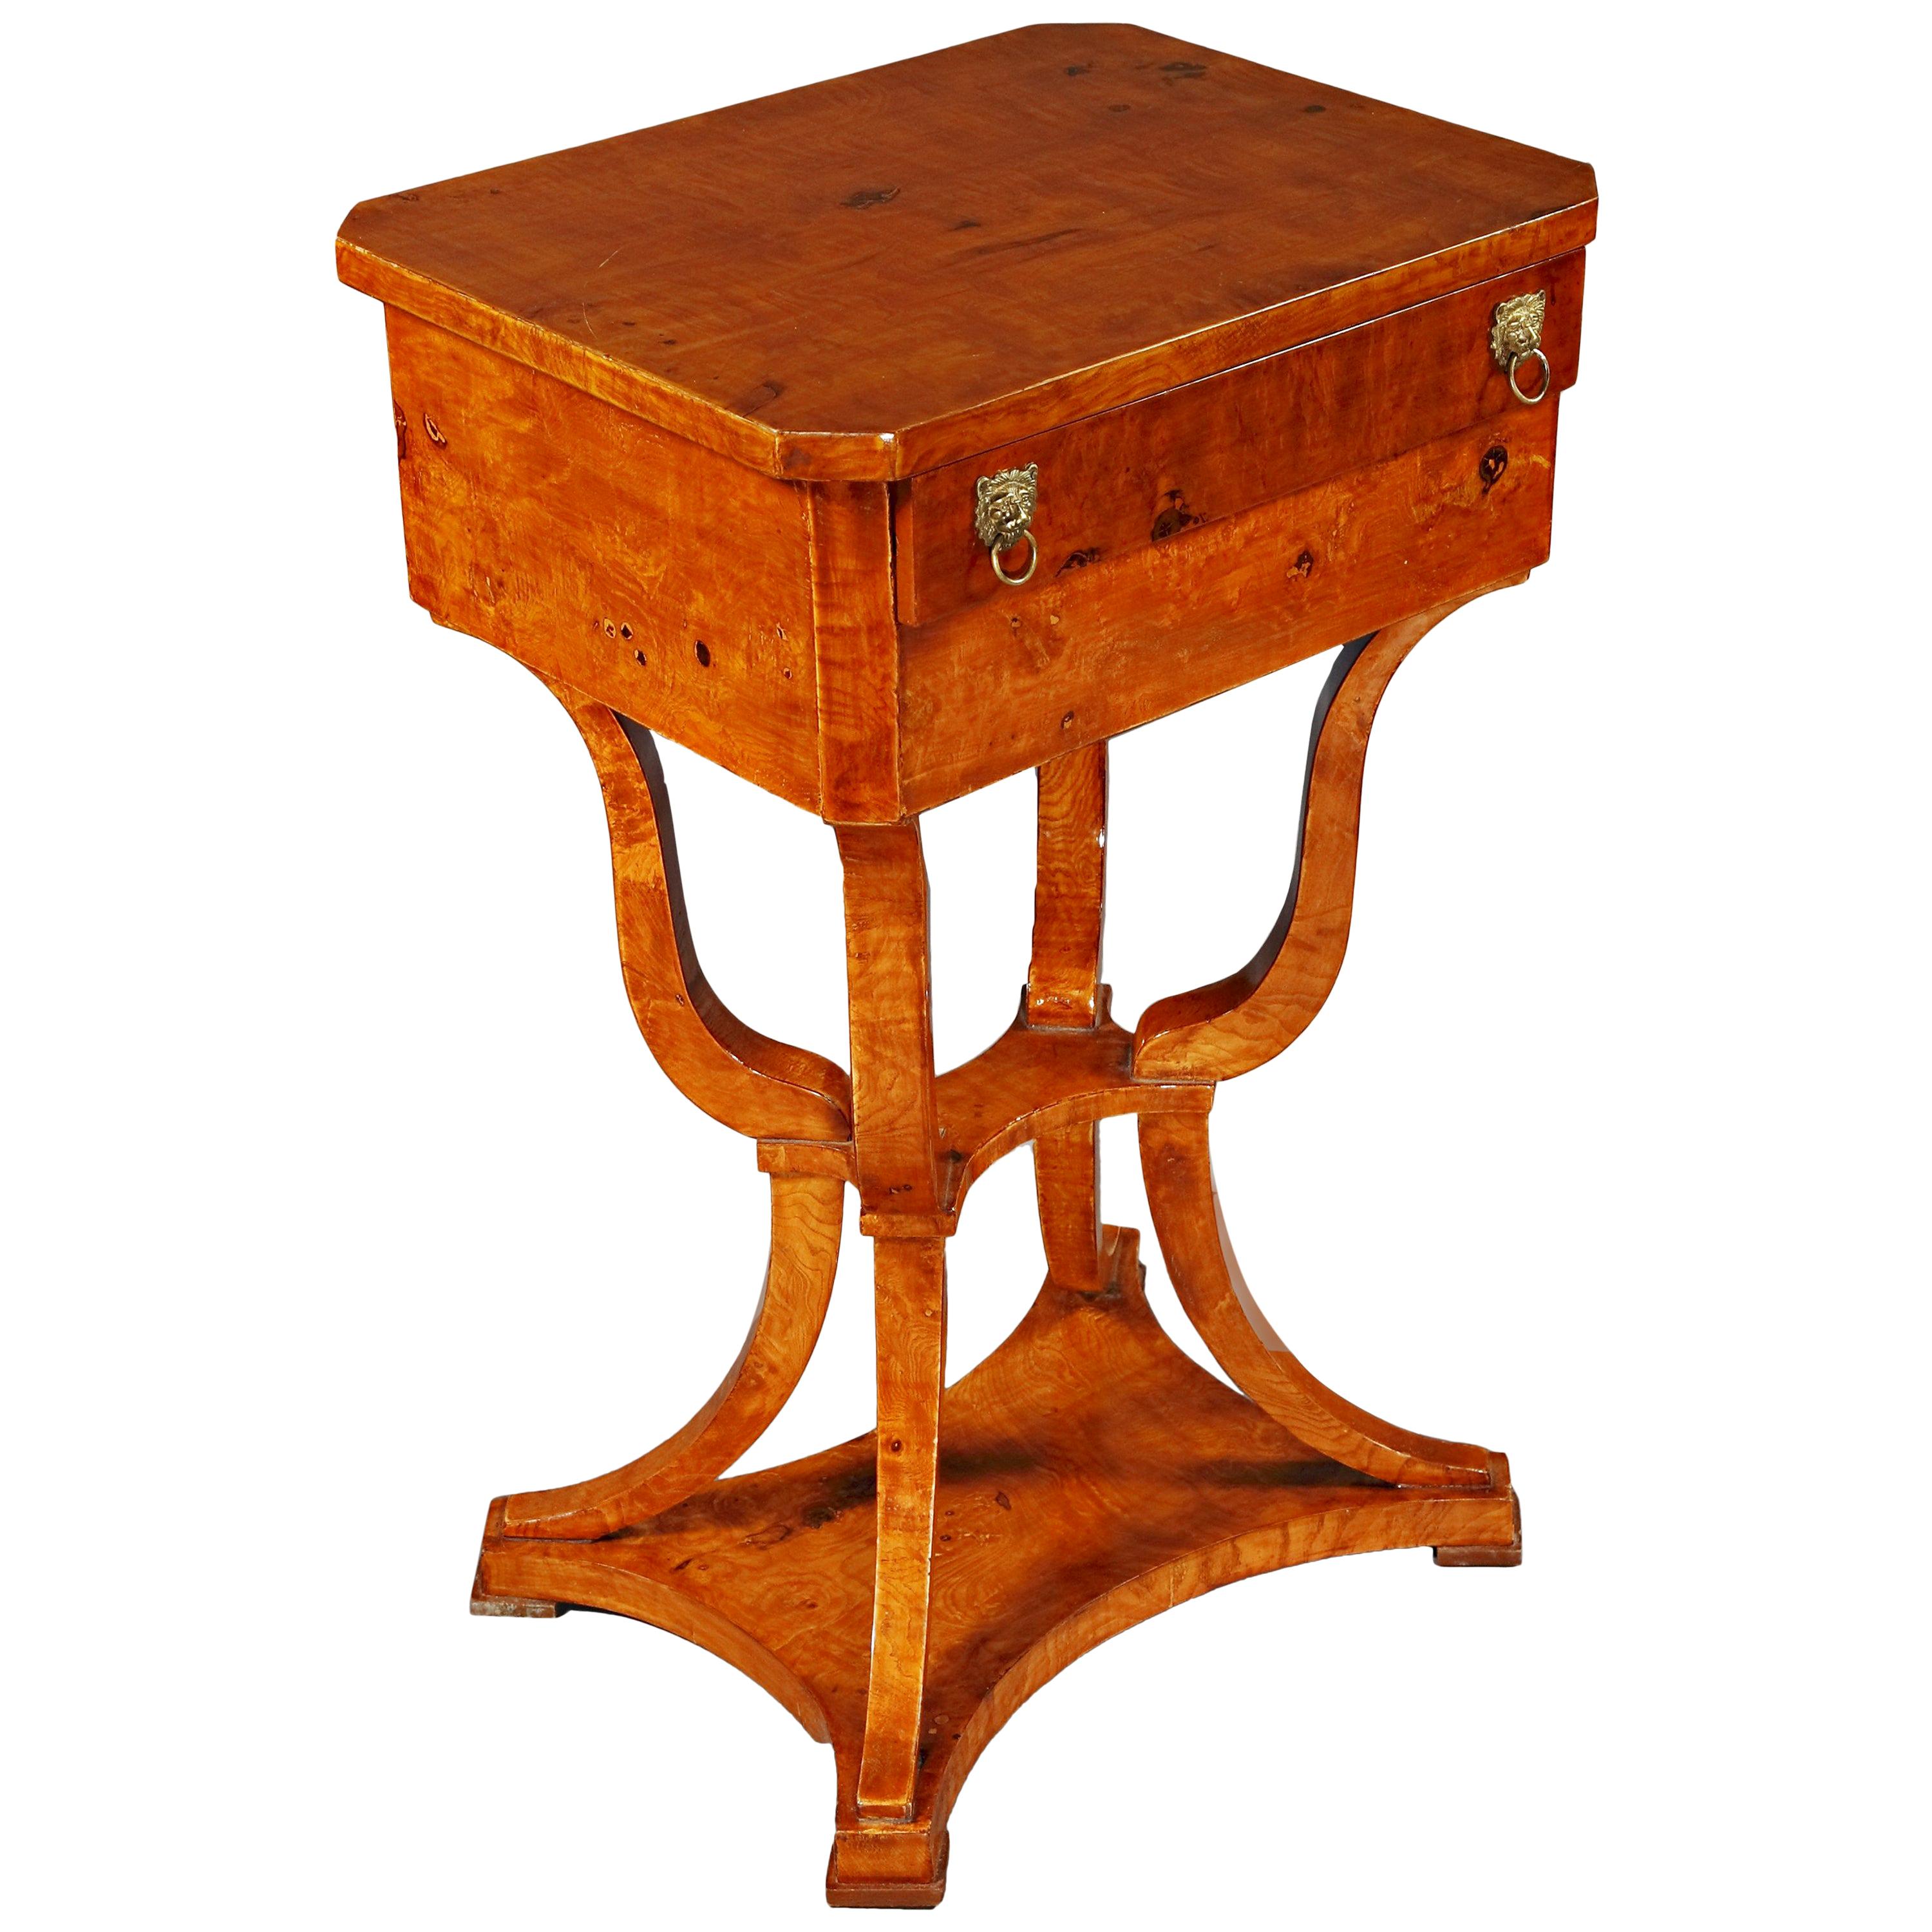 Elegant Sewing Table in antique Biedermeier Style Maple veneer